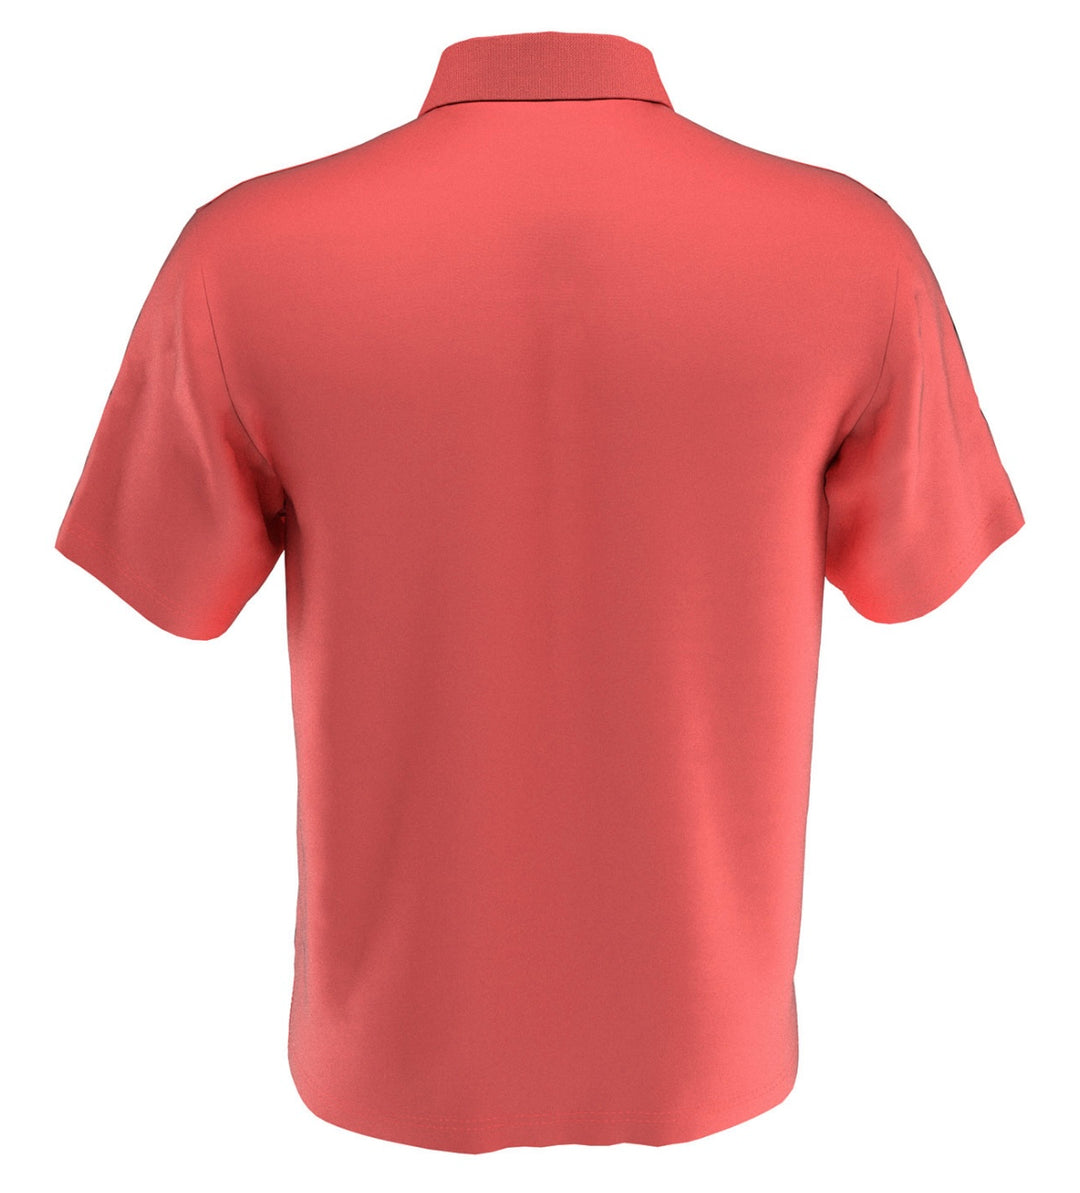 Pga Tour Men's Short Sleeve Classic Fit Airflux Polo Shirt Dubarry Size M